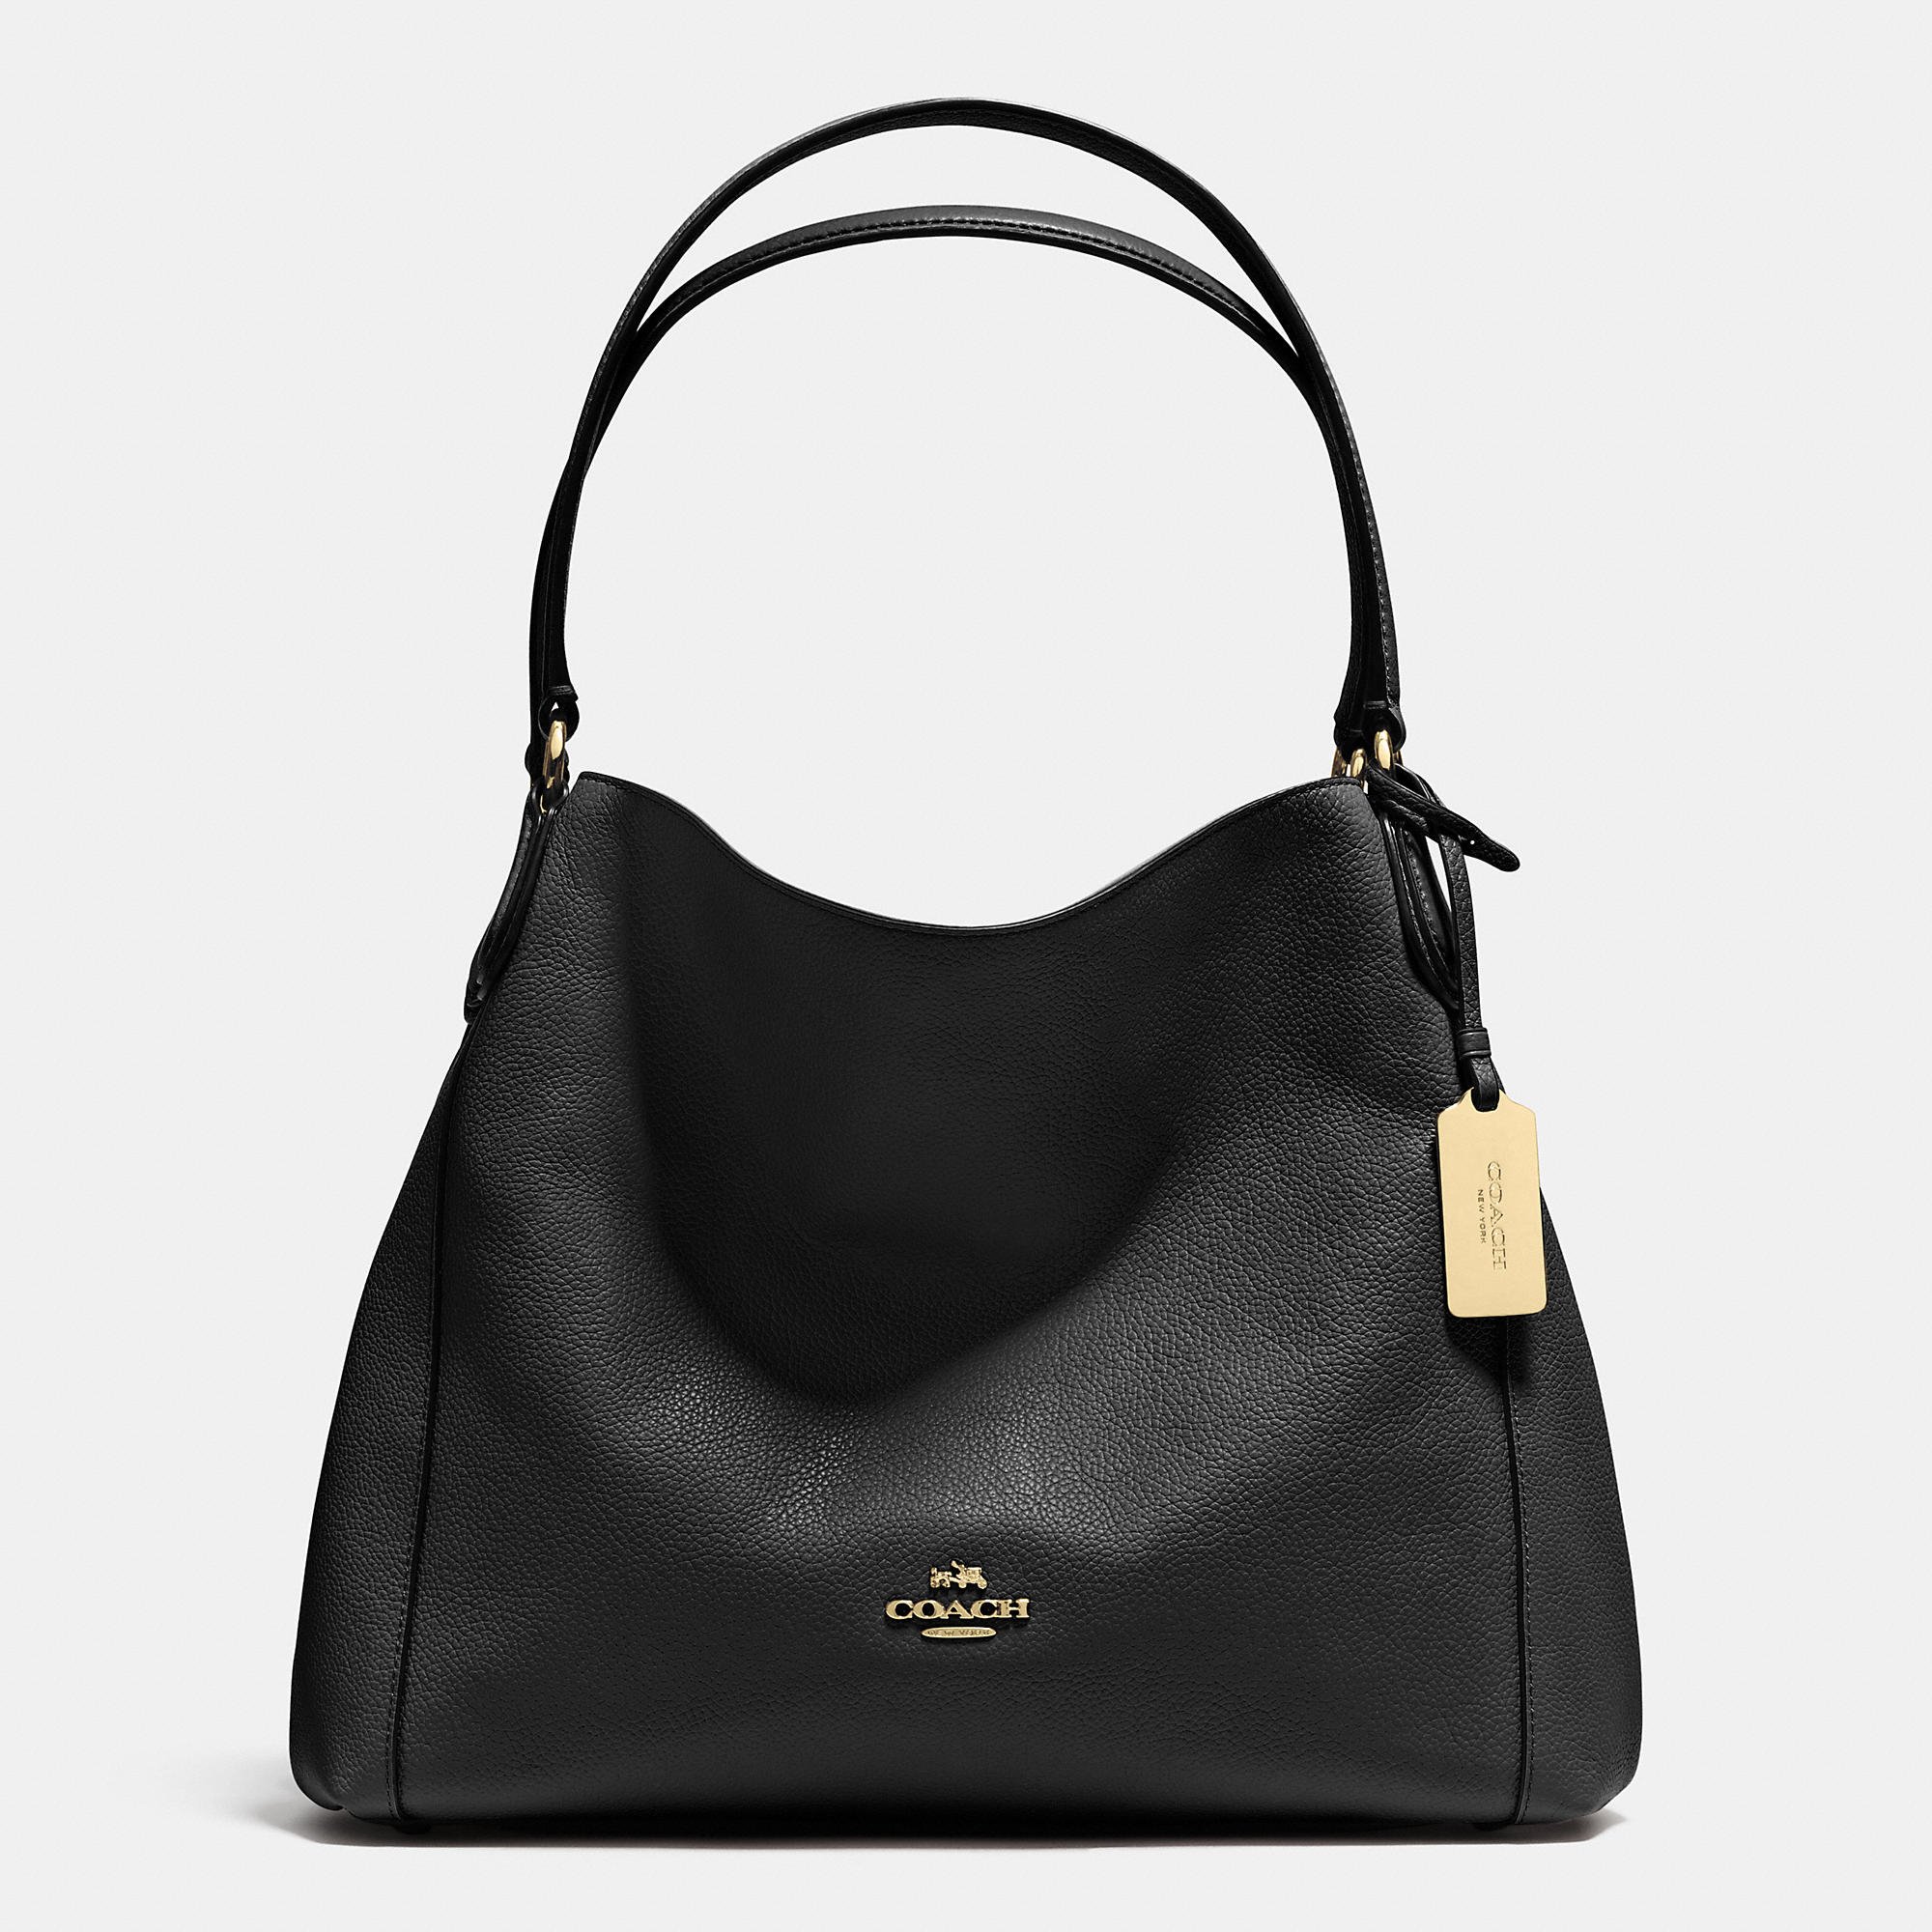 COACH Edie 31 Leather Shoulder Bag in Light Gold/Black (Black) - Lyst